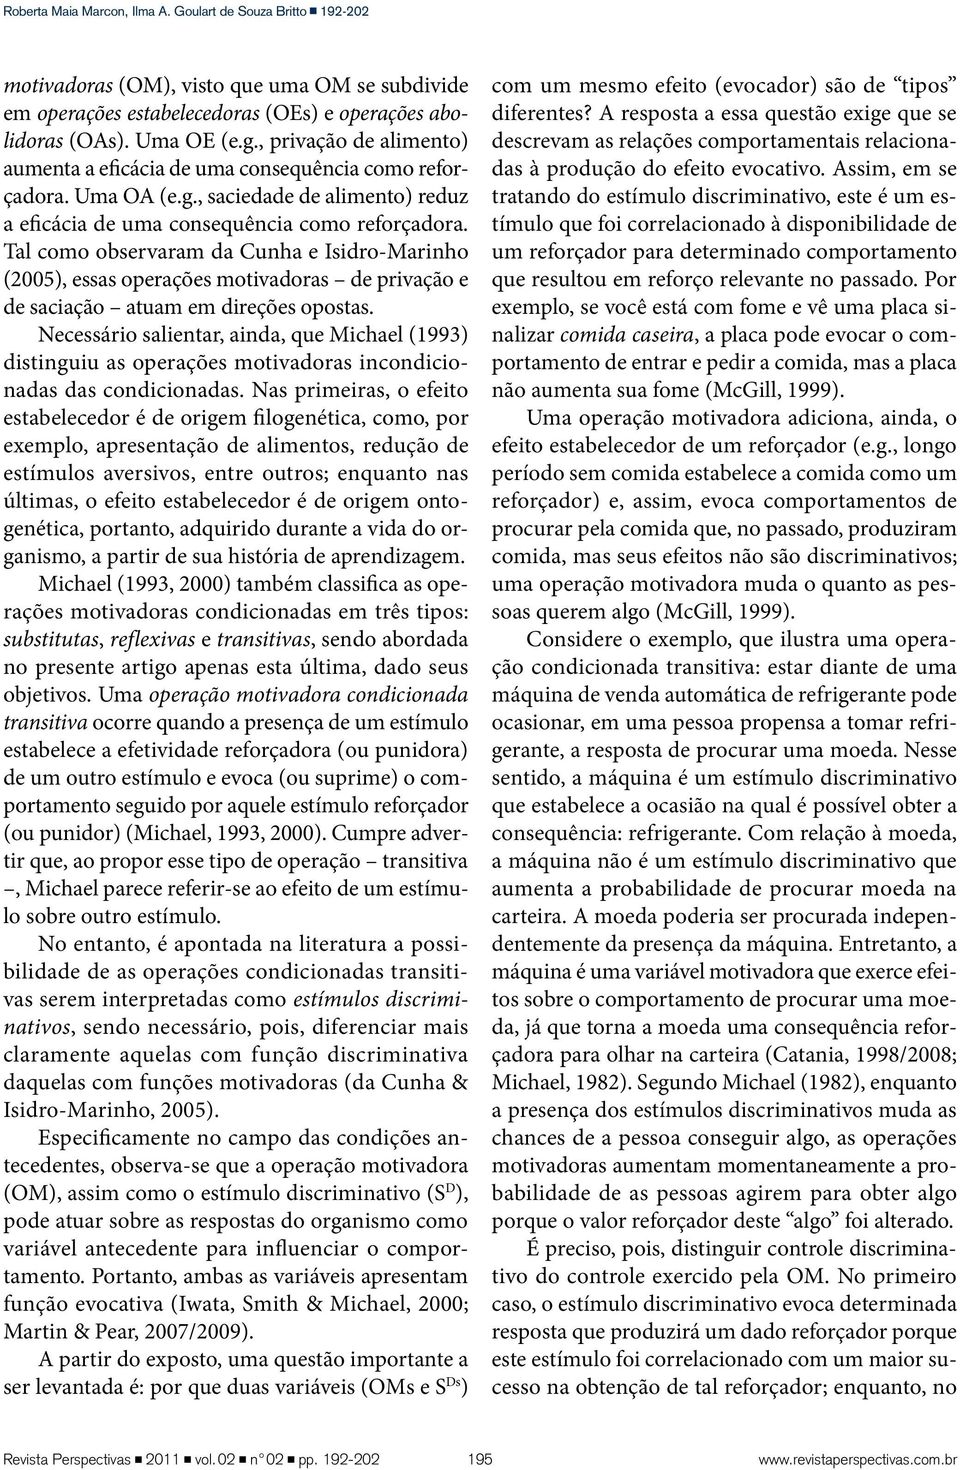 Tal como observaram da Cunha e Isidro-Marinho (2005), essas operações motivadoras de privação e de saciação atuam em direções opostas.